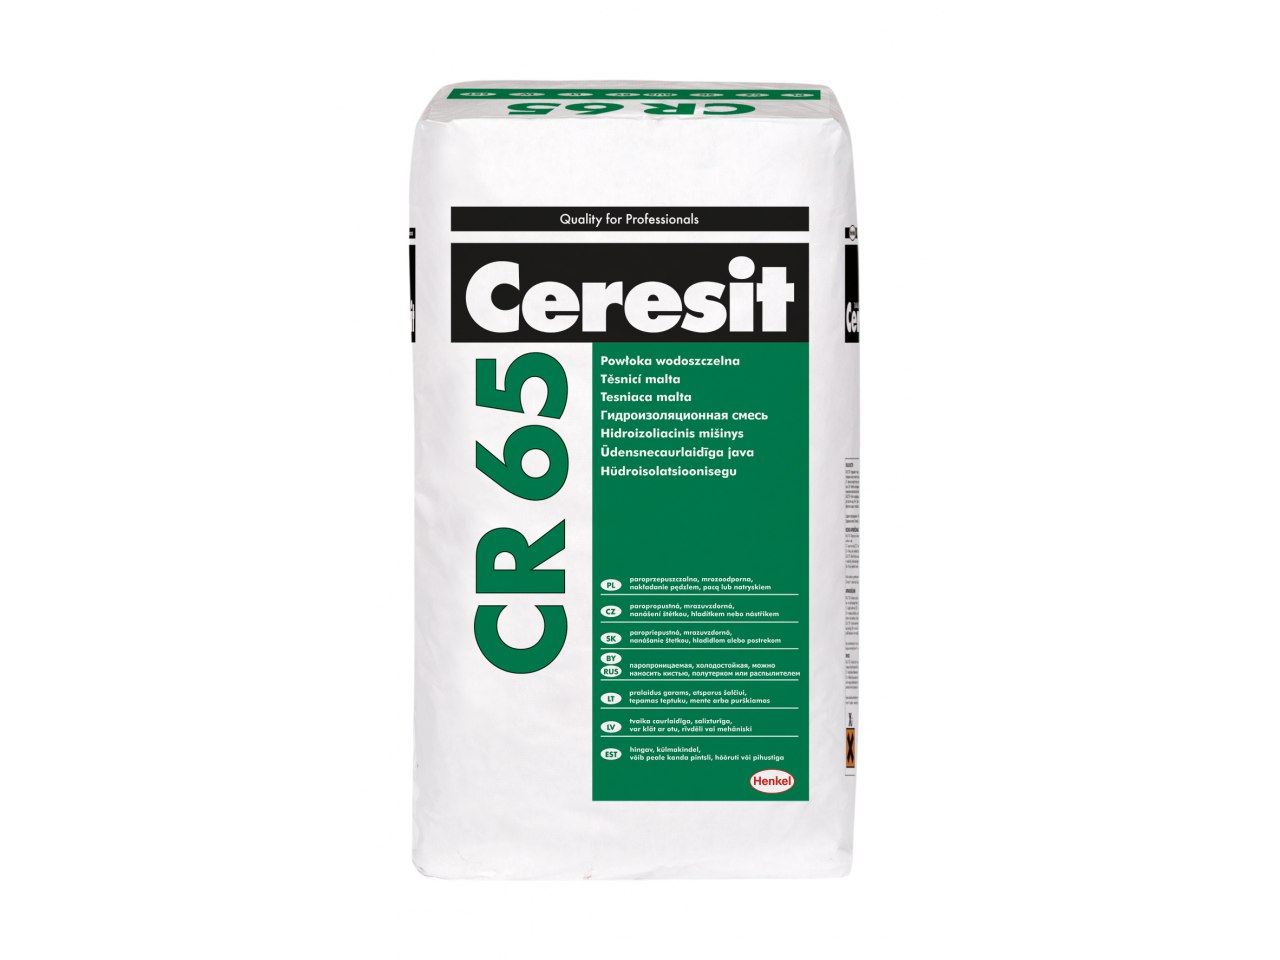 Ar vietoje Ceresit CE33 skiedinio galima naudoti „Ceresit CR65“ hidroizoliaciją?